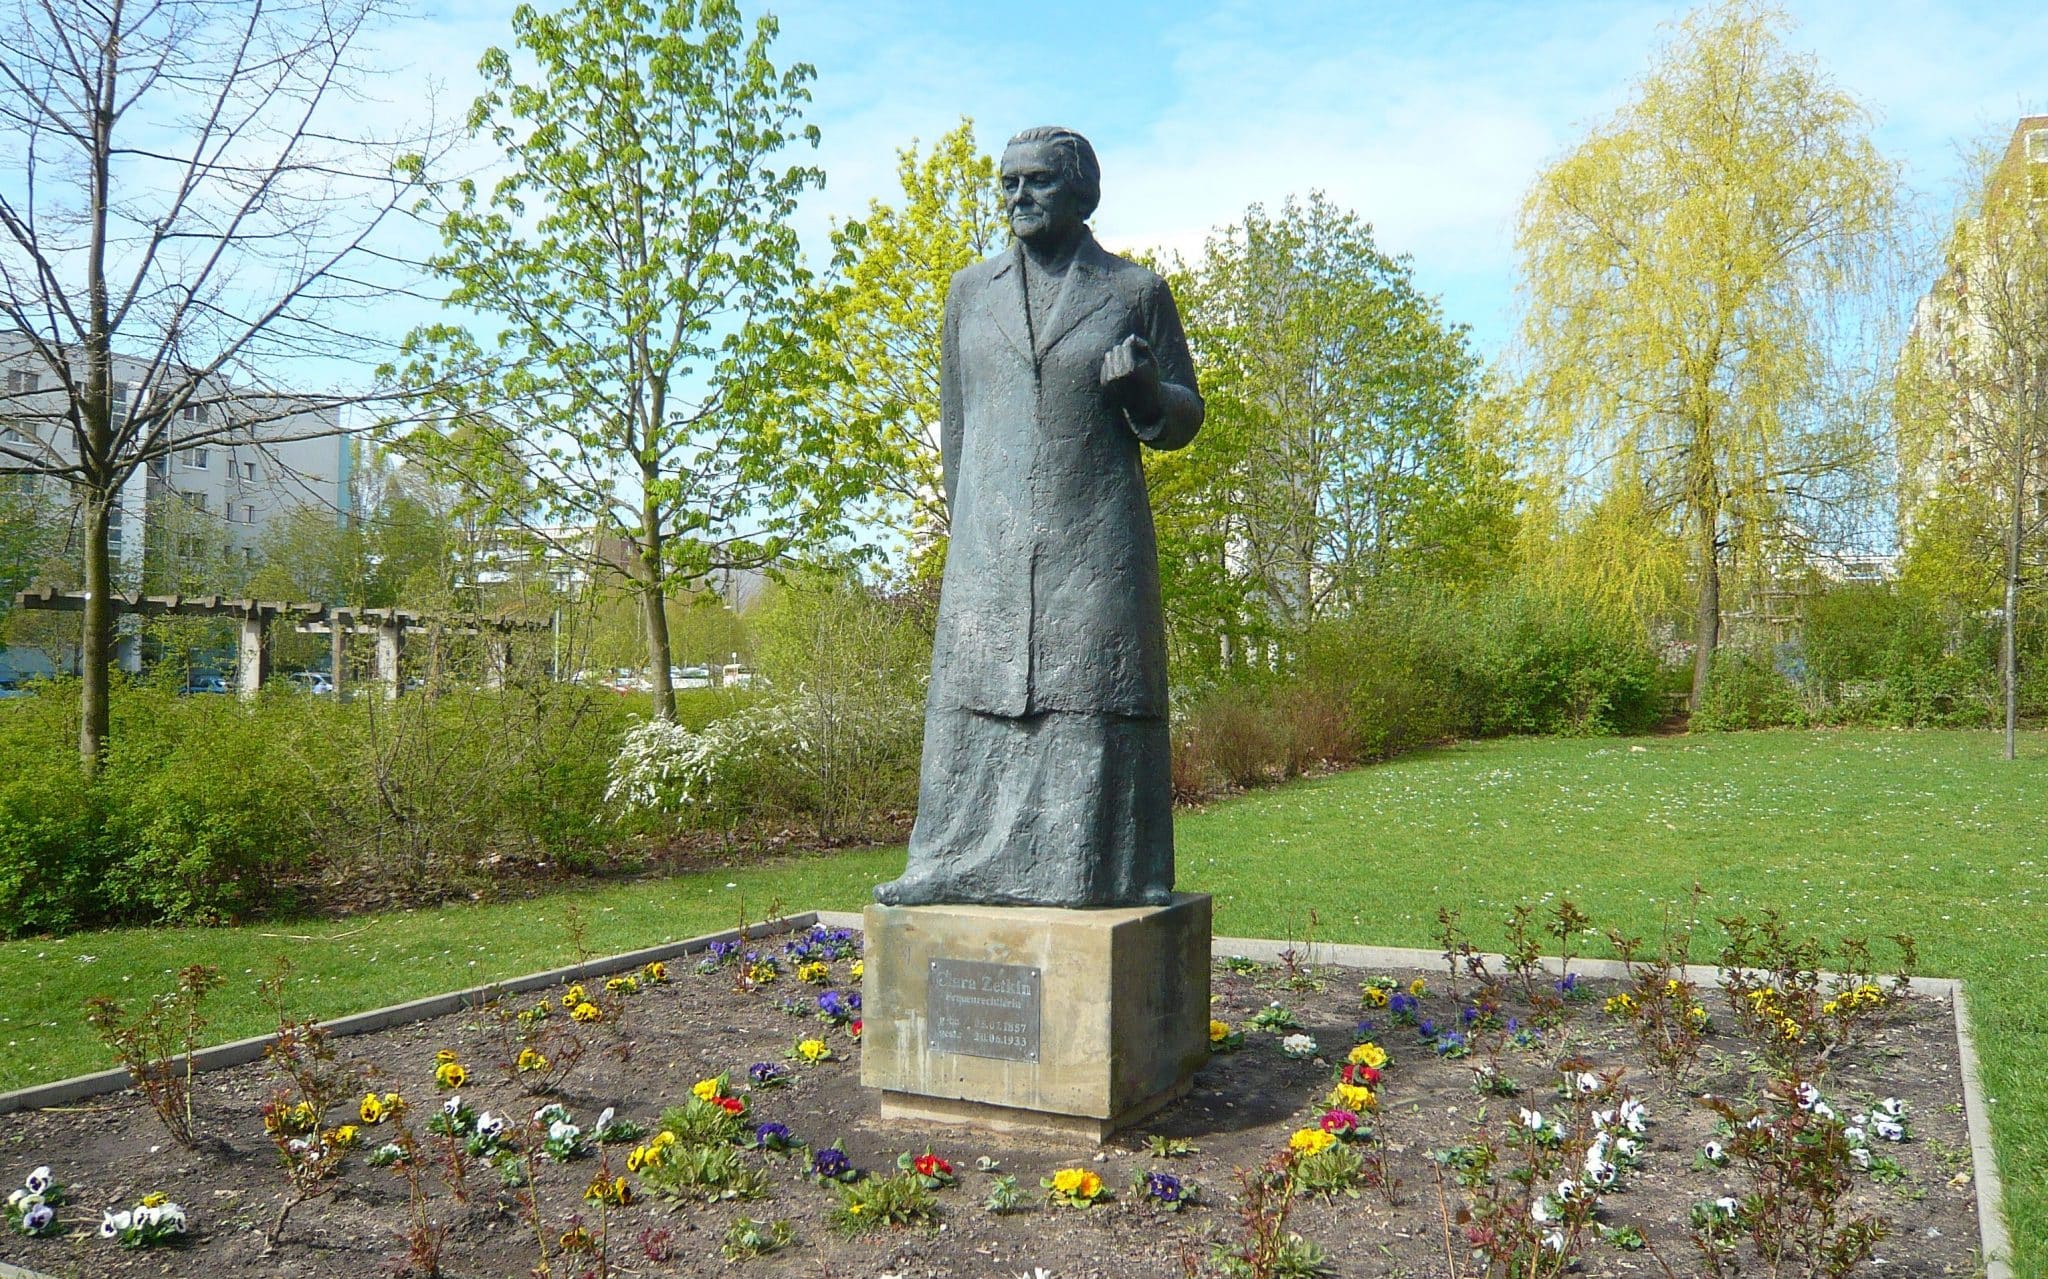 Estátua da ativista Clara Zetkin no meio de um jardim.